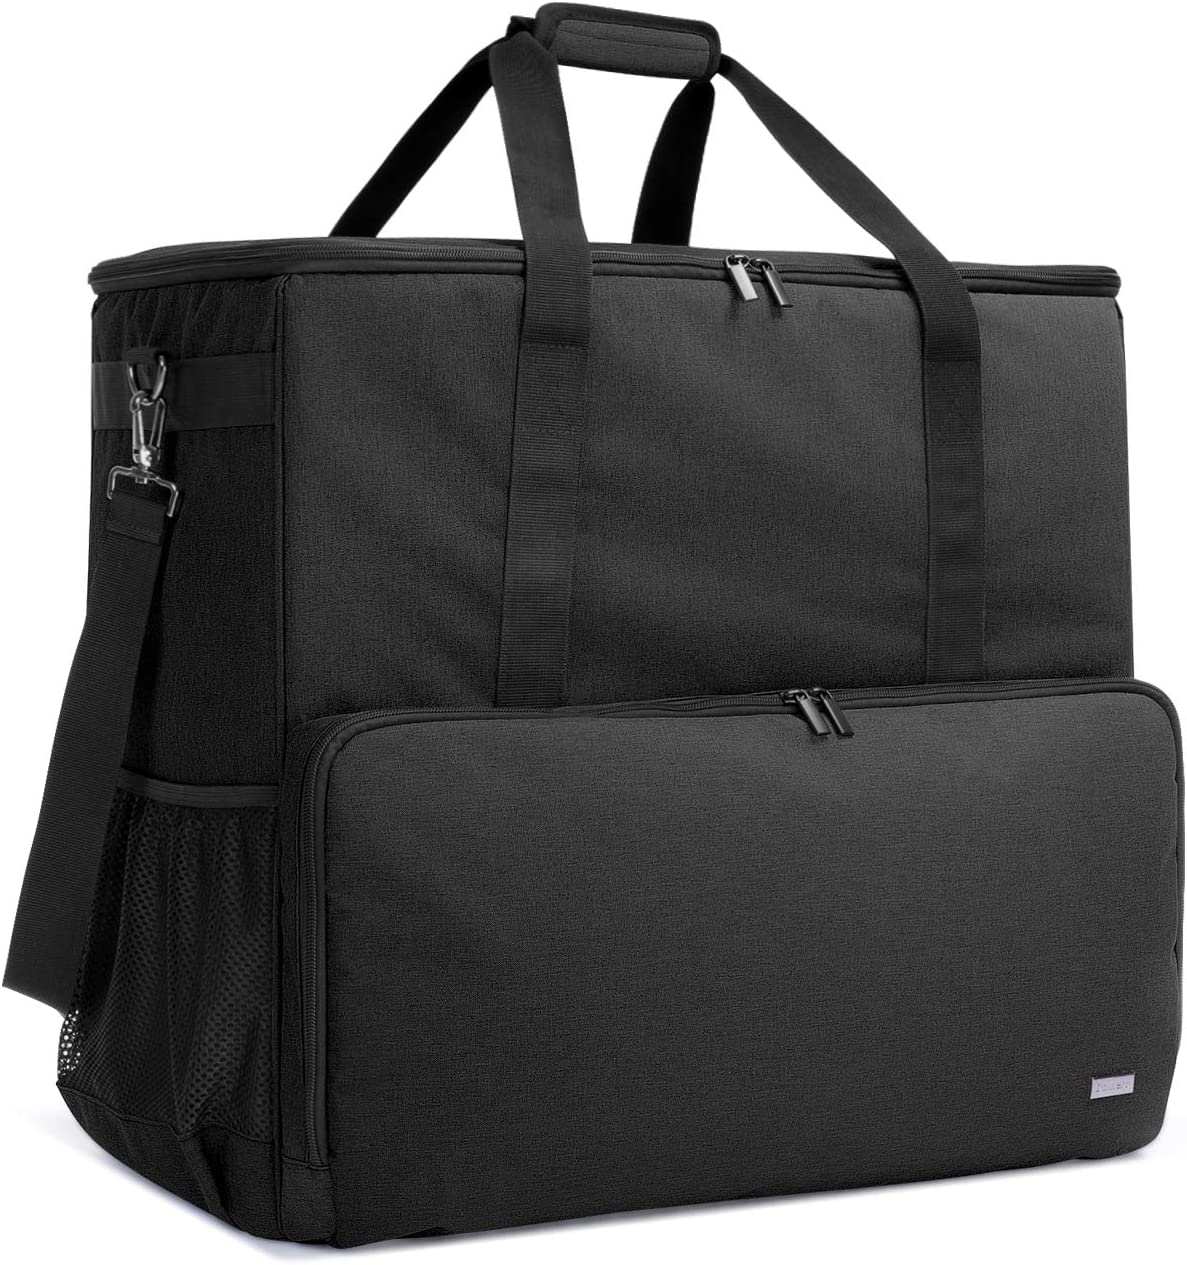 CURMIO 데스크톱 컴퓨터 여행 가방, 컴퓨터 타워 PC 섀시용 휴대용 케이스, 키보드, 케이블 및 마우스, 가방 전용, 검은색